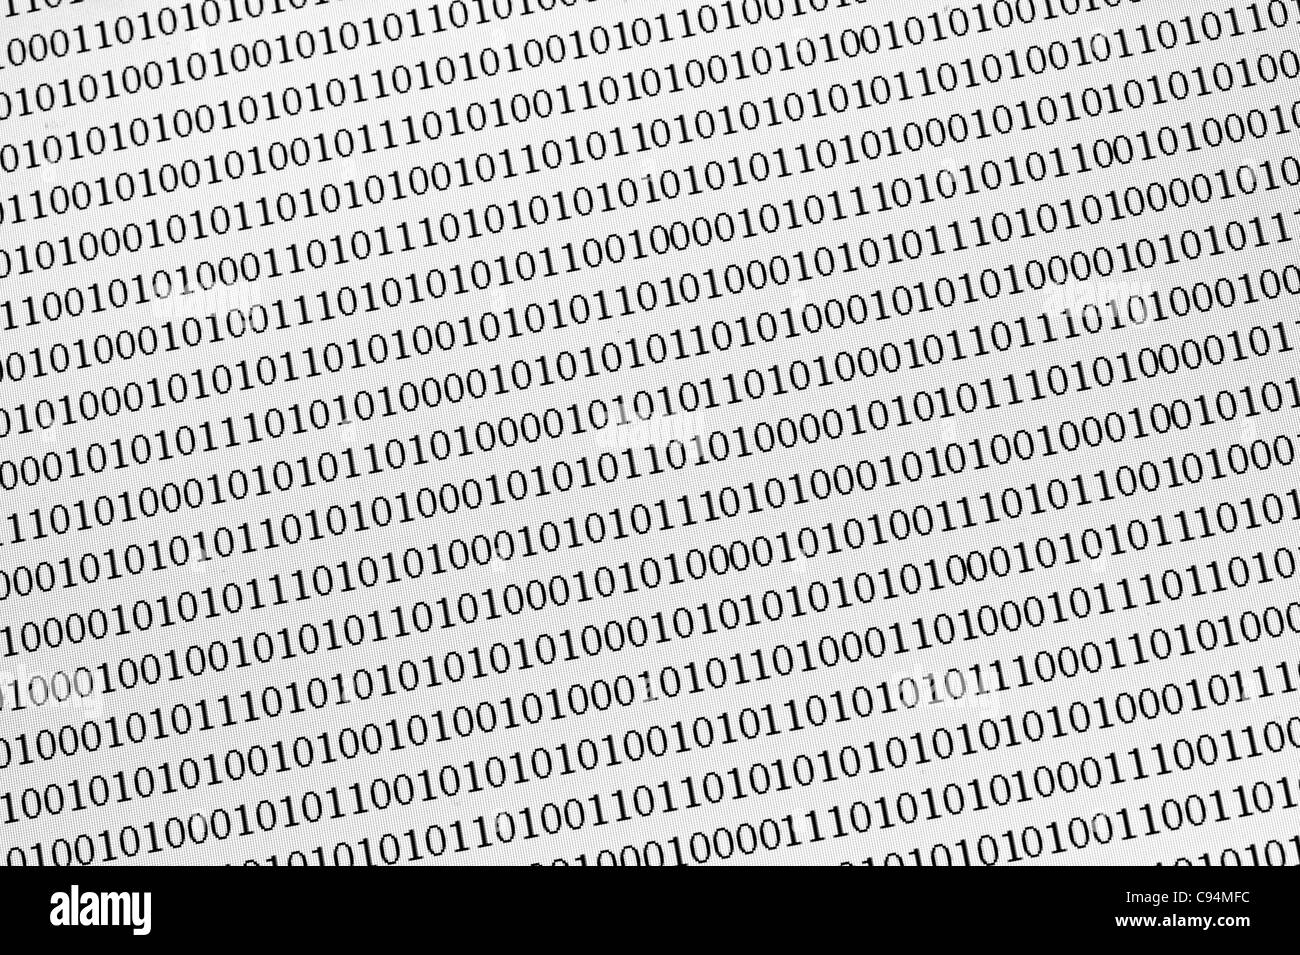 binäre Zahlen auf einem Computerbildschirm Stockfoto